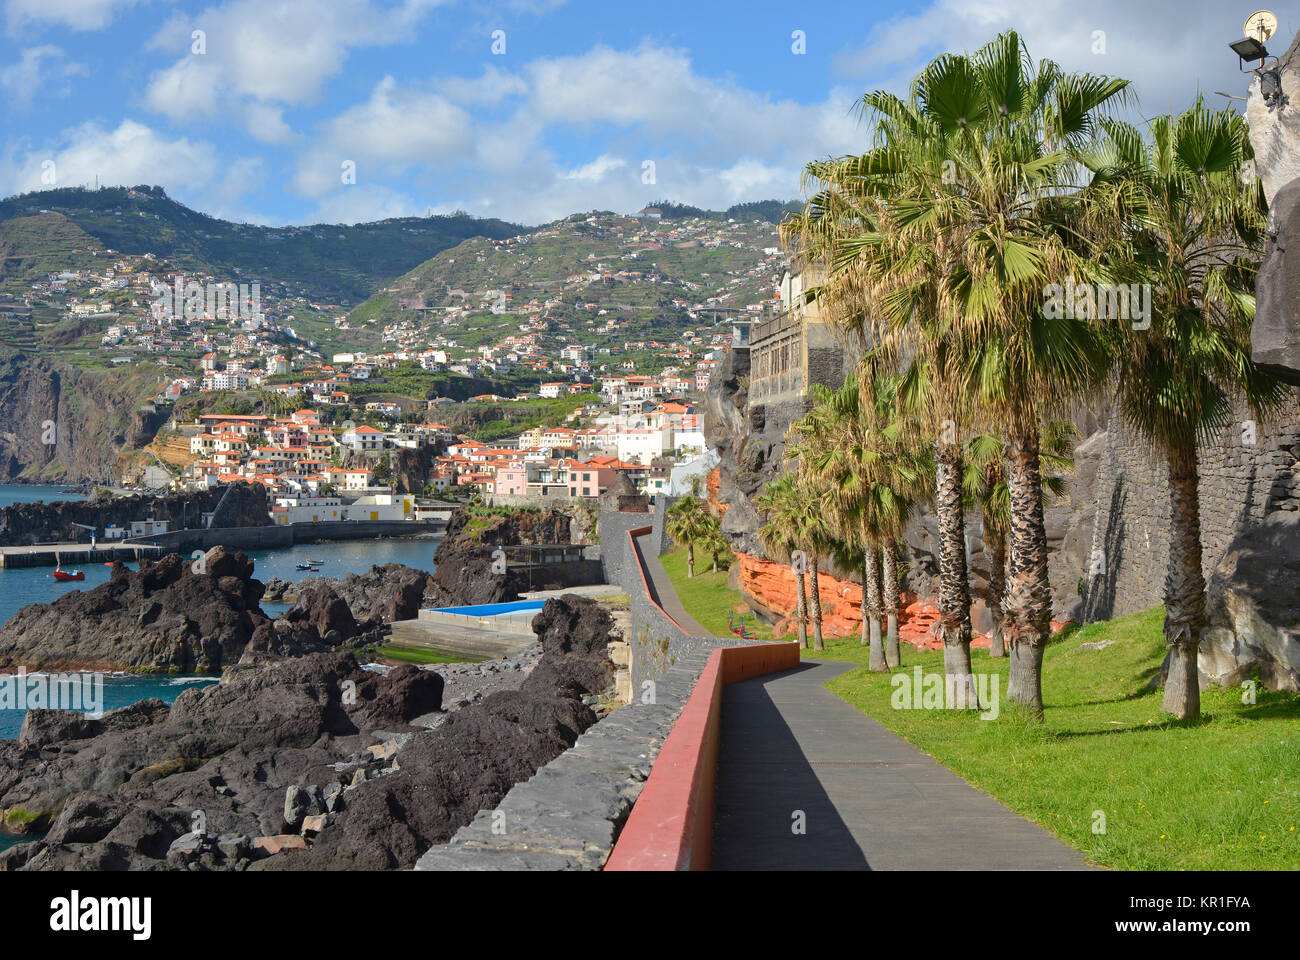 Camara de Lobos, Madeira, Portugal Stockfoto